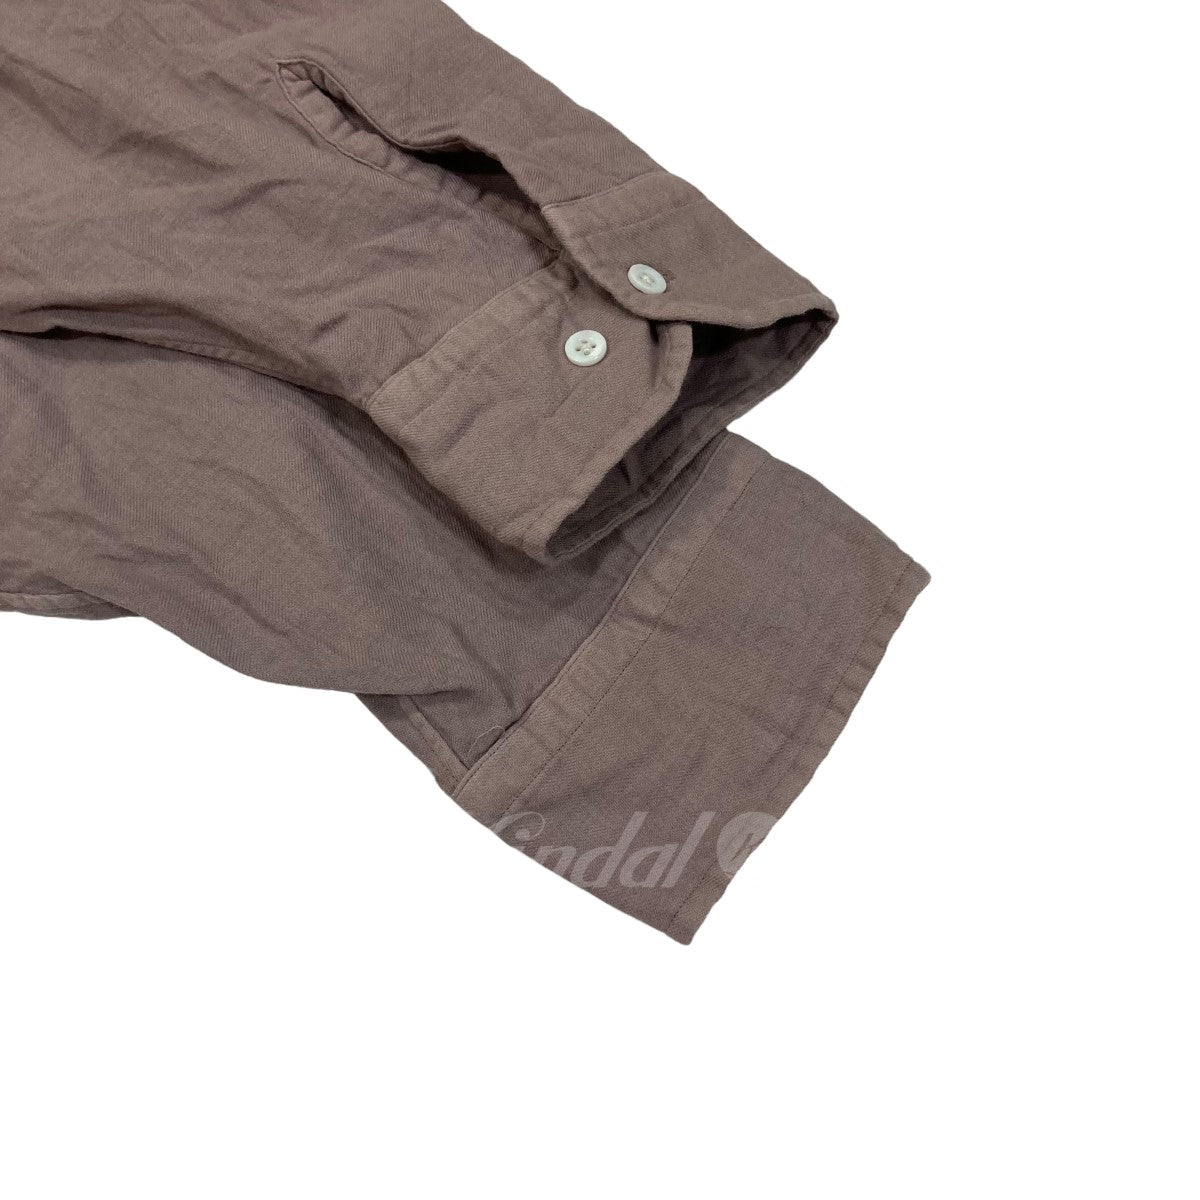 HERILL(ヘリル) CottonCashmere Shirts コットンカシミヤシャツ 22-050-HL-8020-3 22050HL80203  ピンク サイズ M